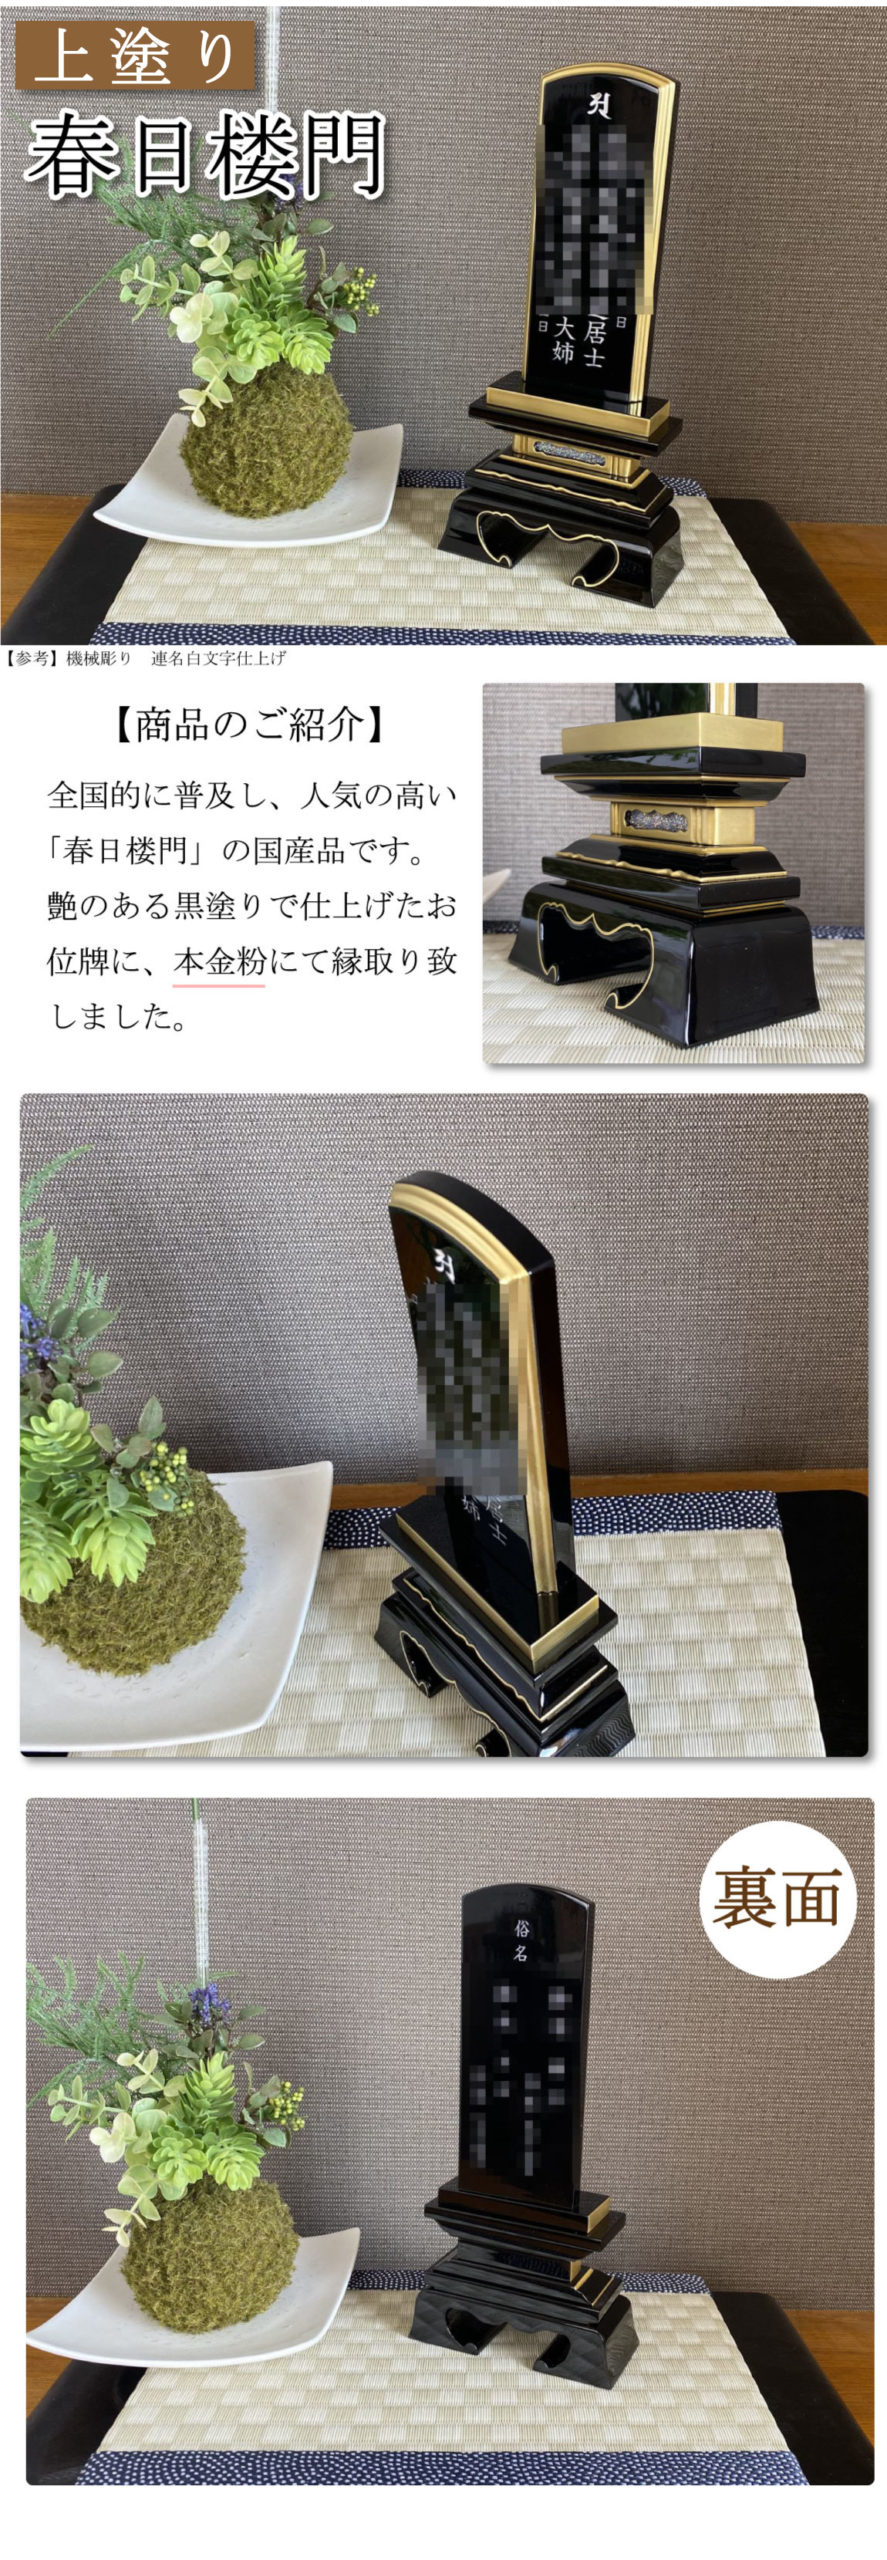 国産品で上塗りの春日楼門のお位牌です。日本国内の職人が細部にわたり丁寧に仕上げたお位牌。本金粉を使用しています。